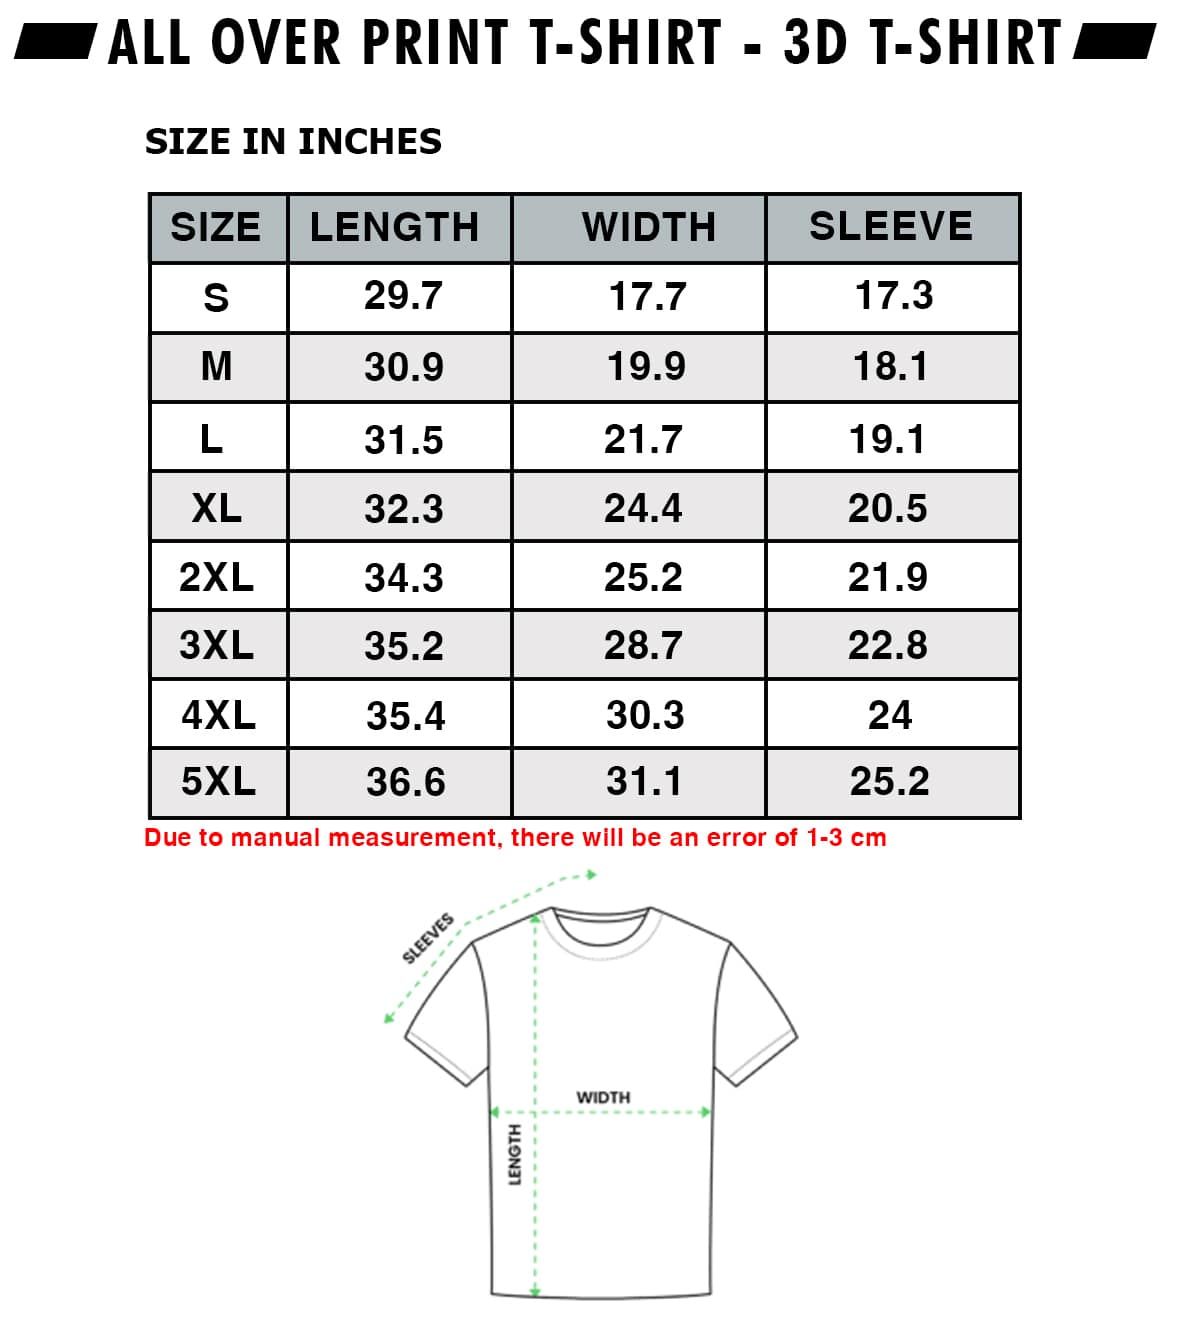 3d t-shirt size chart